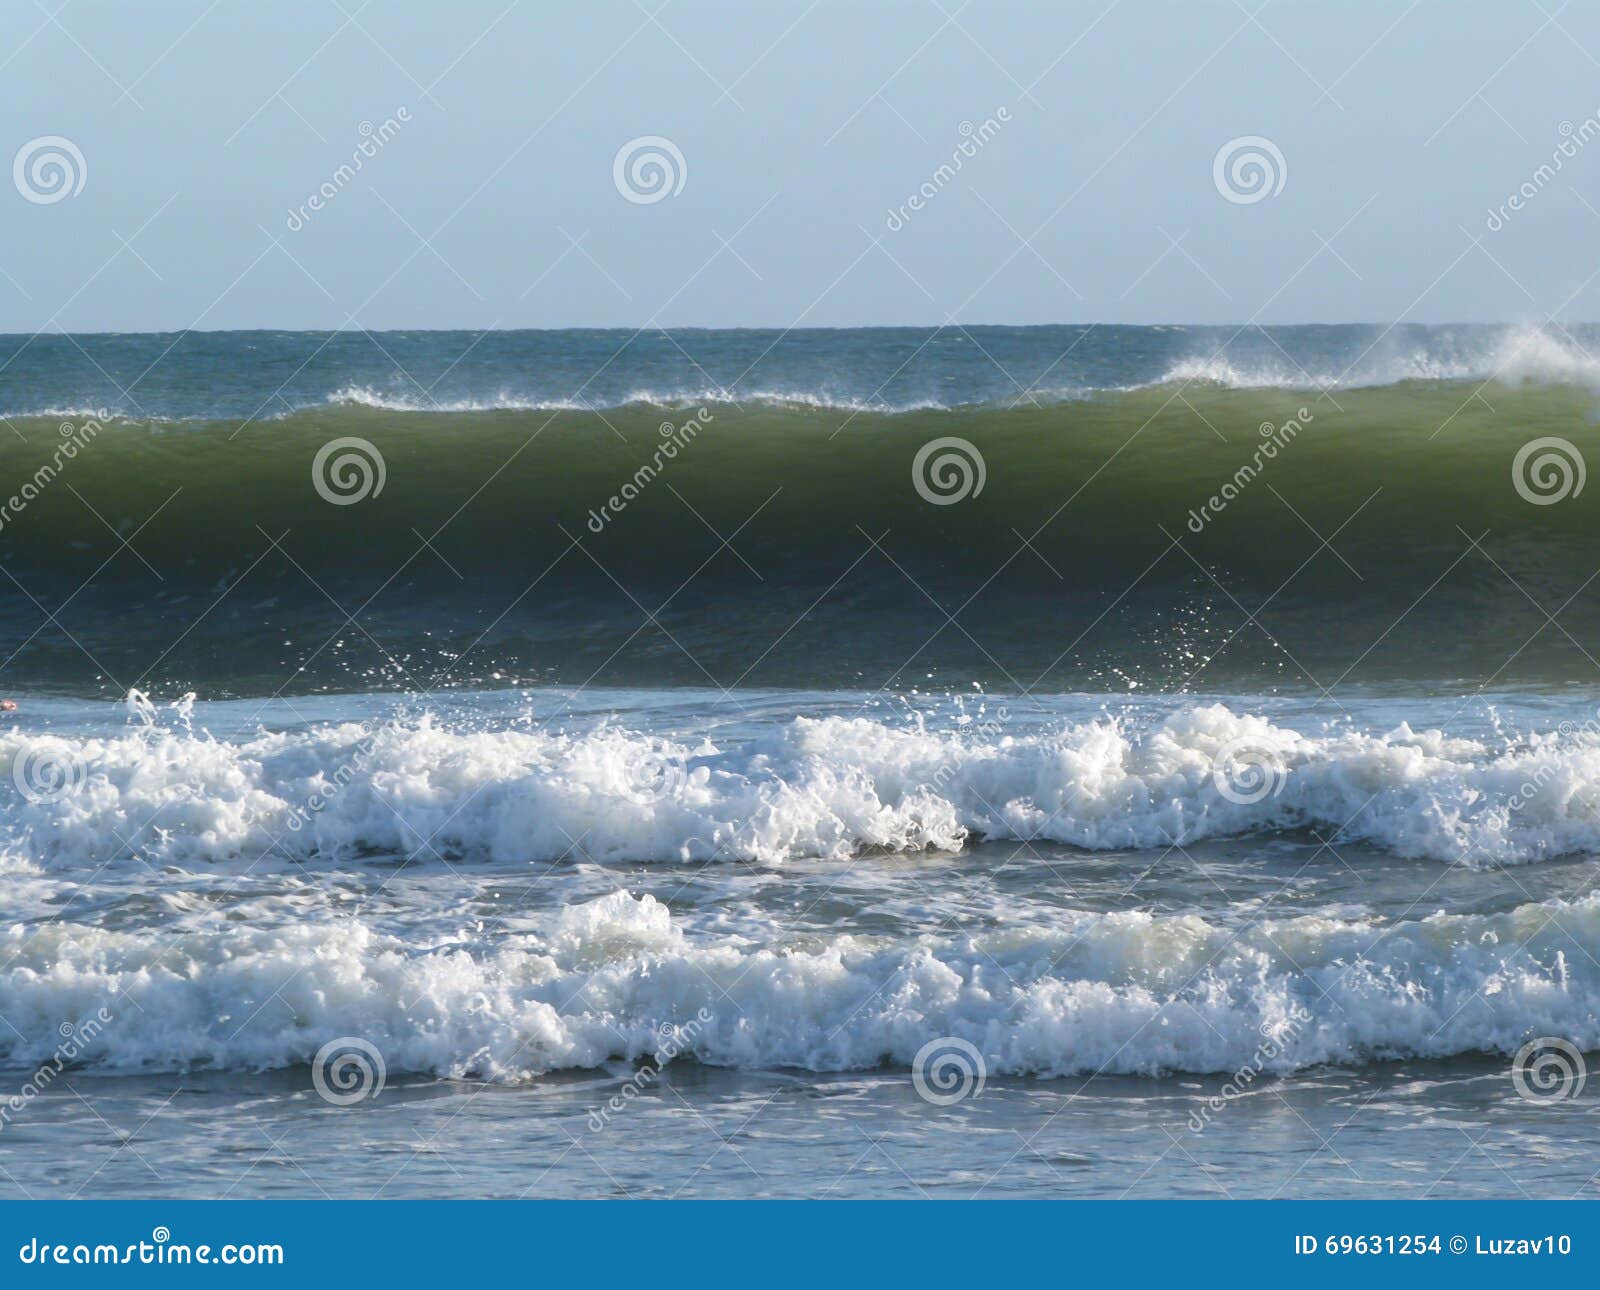 atlantic ocean surfing waves